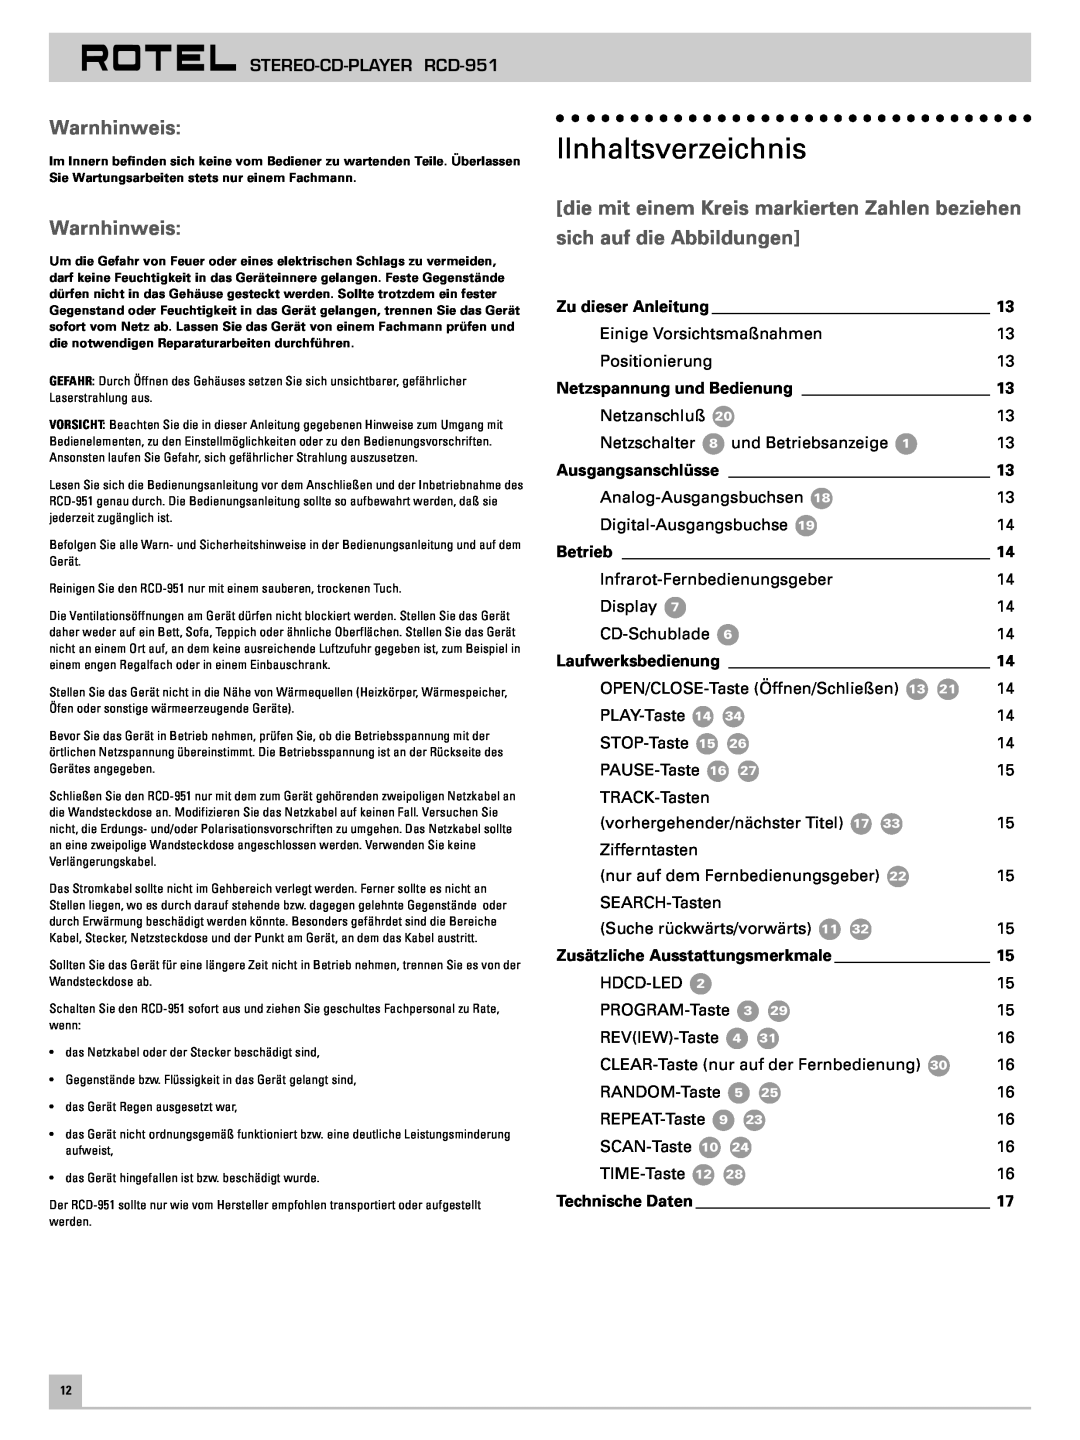 Rotel RCD-951 IInhaltsverzeichnis, Warnhinweis, die mit einem Kreis markierten Zahlen beziehen, sich auf die Abbildungen 